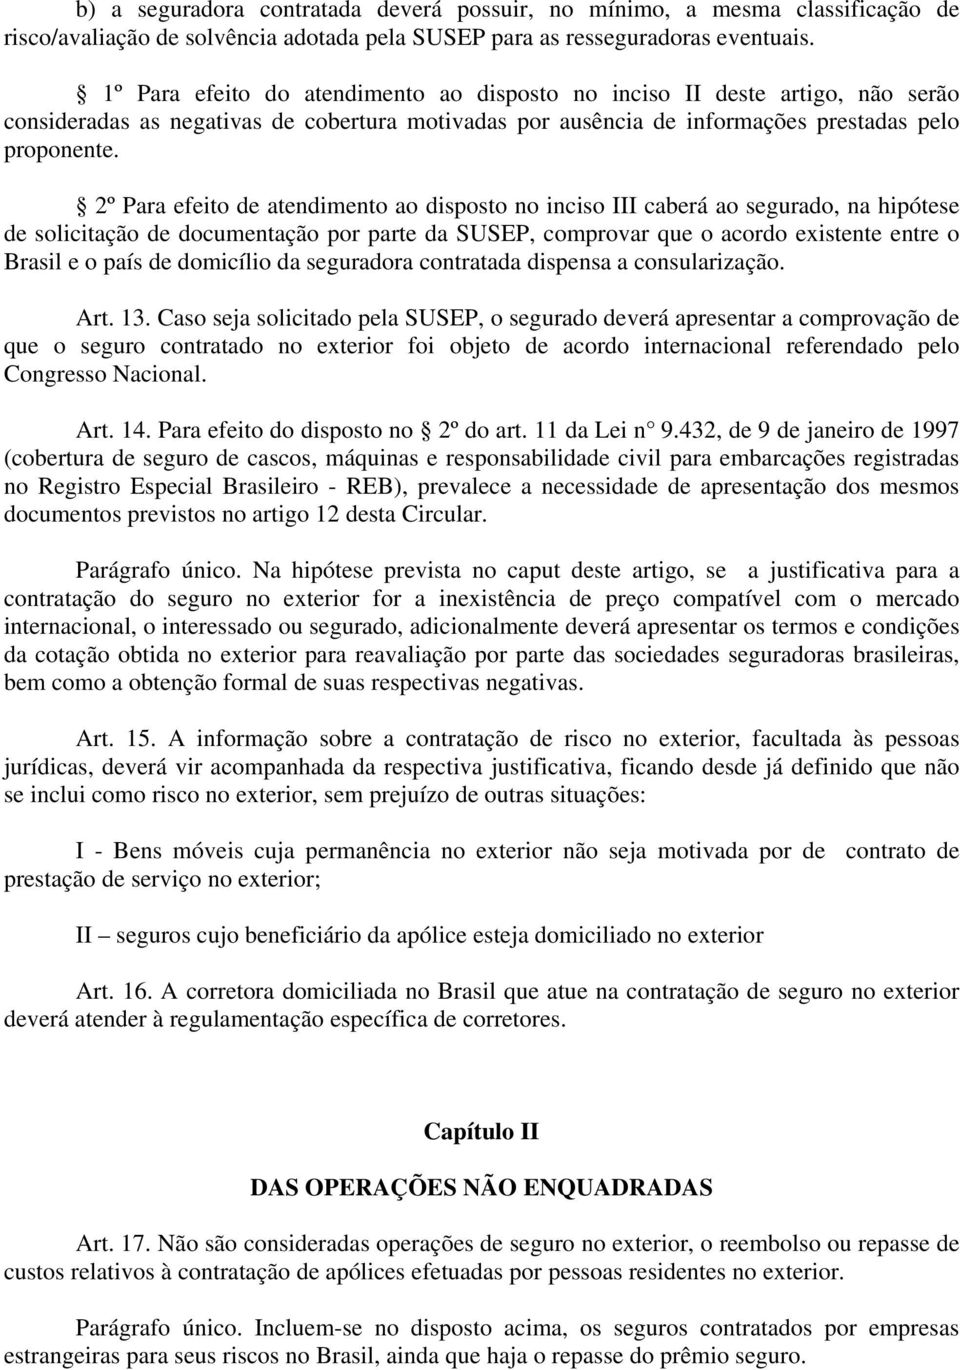 2º Para efeito de atendimento ao disposto no inciso III caberá ao segurado, na hipótese de solicitação de documentação por parte da SUSEP, comprovar que o acordo existente entre o Brasil e o país de